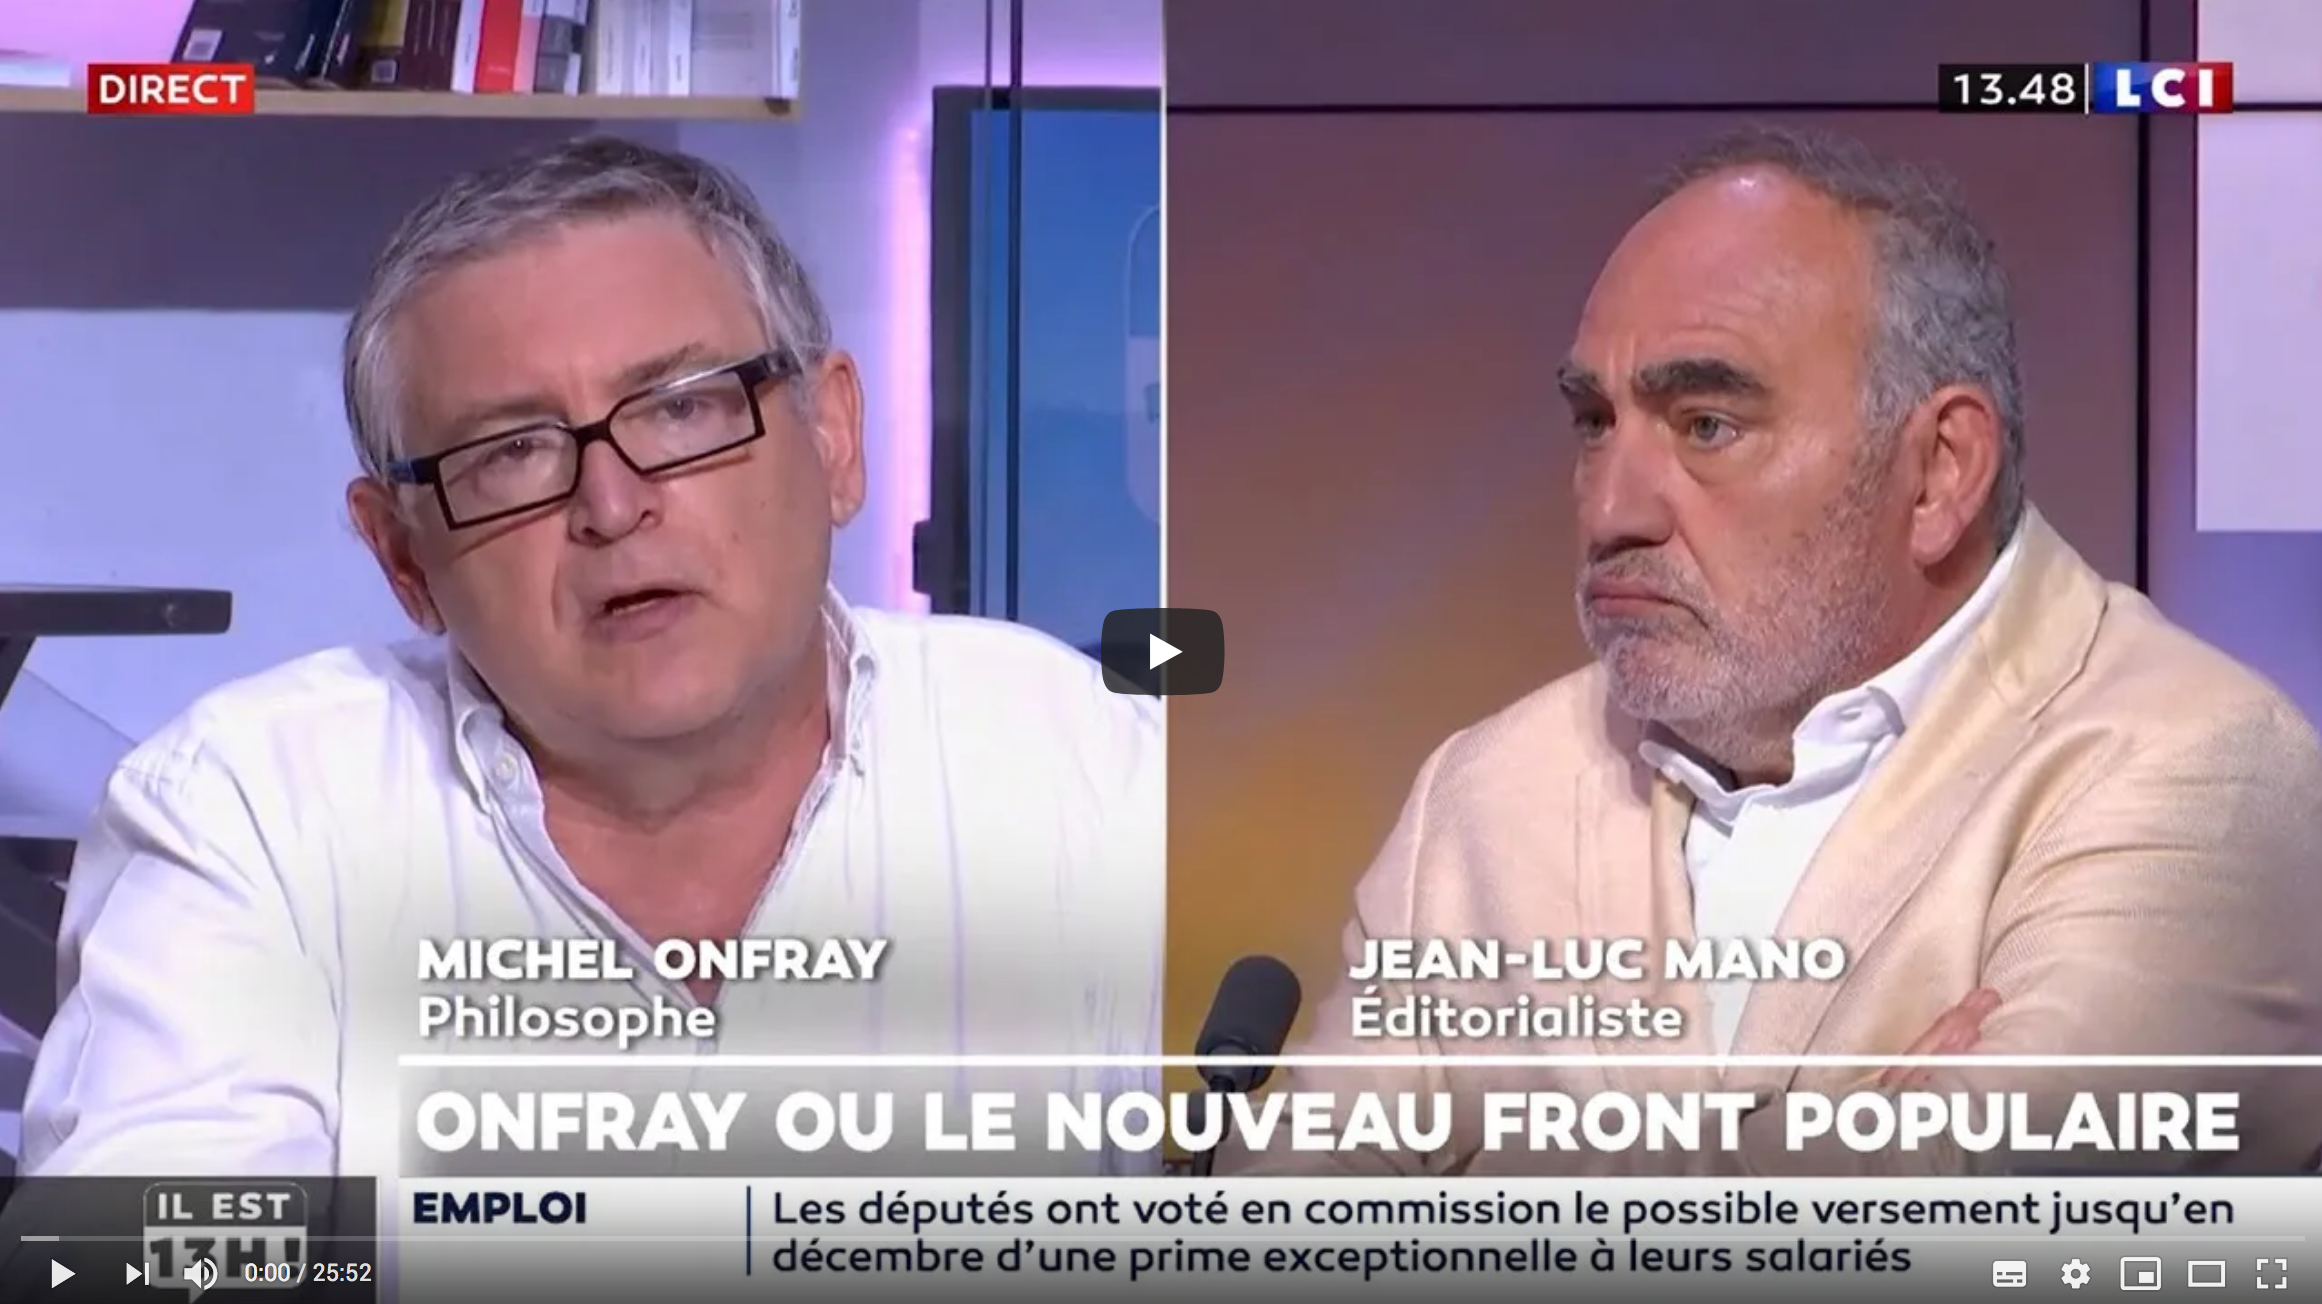 Michel Onfray défend le professeur Didier Raoult après son audition et détruit l’éditorialiste Jean-Luc Mano (VIDÉO)